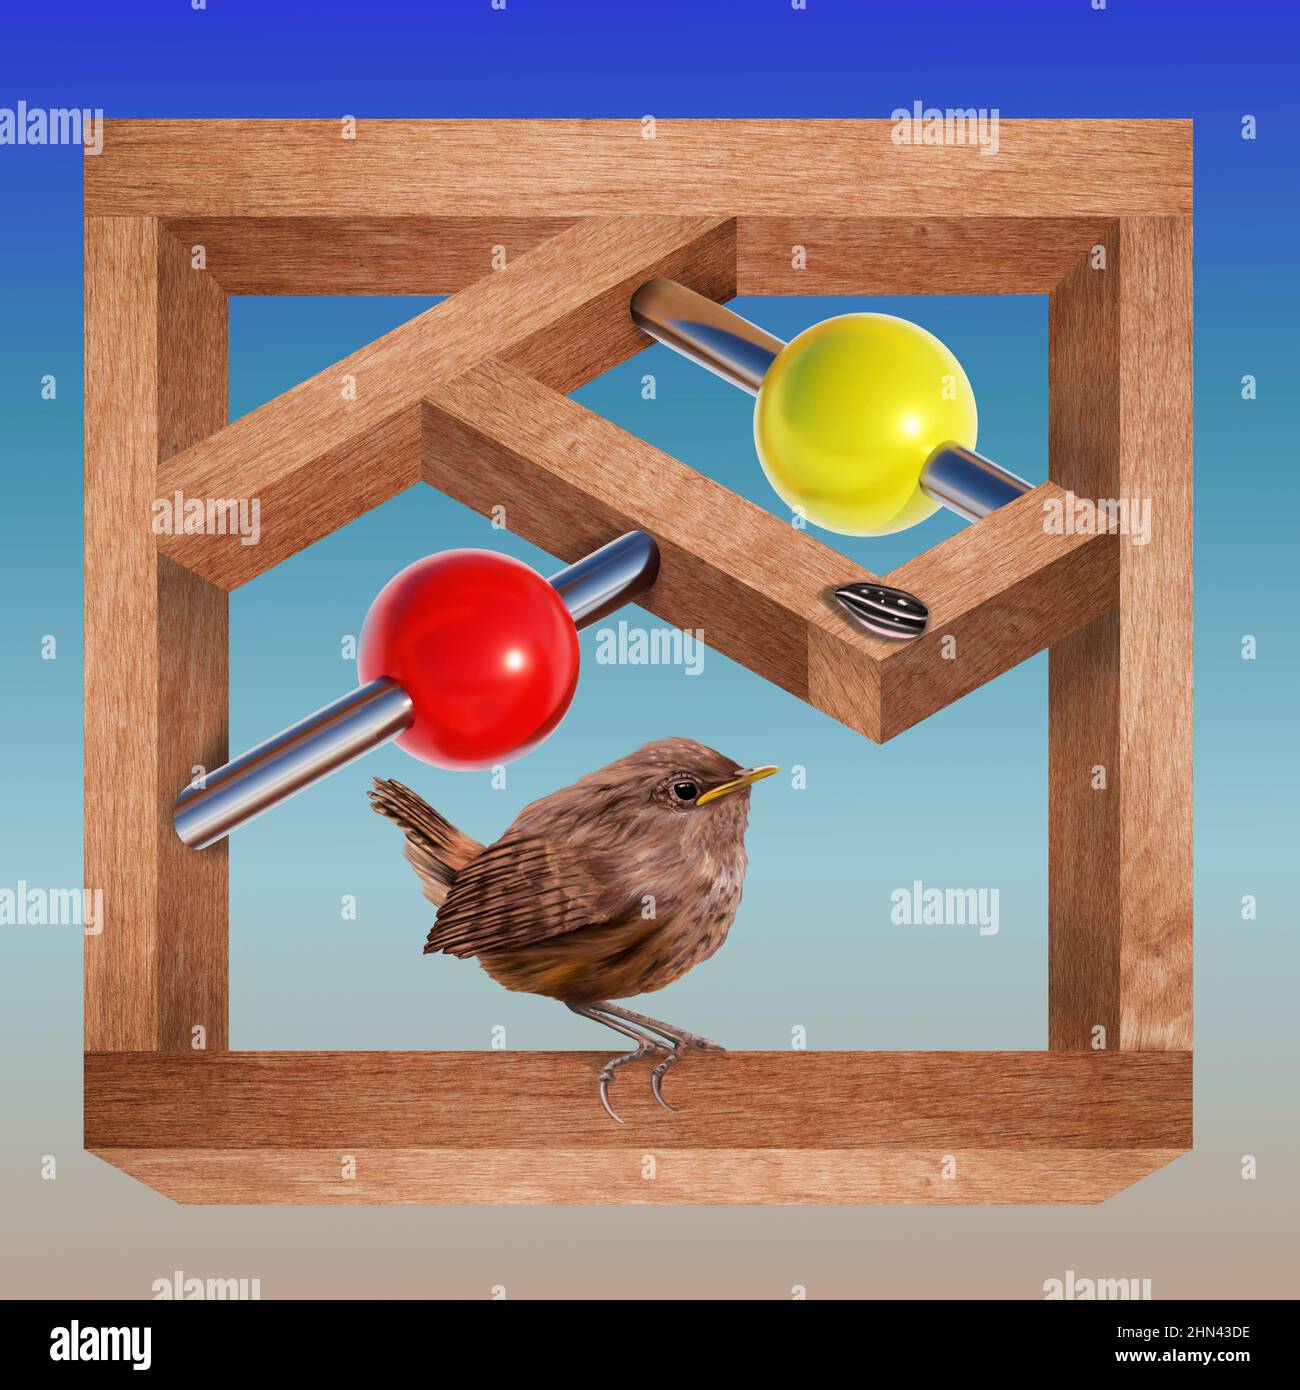 3d ilustración de un pequeño pájaro encaramado en una estructura de madera imposible Foto de stock